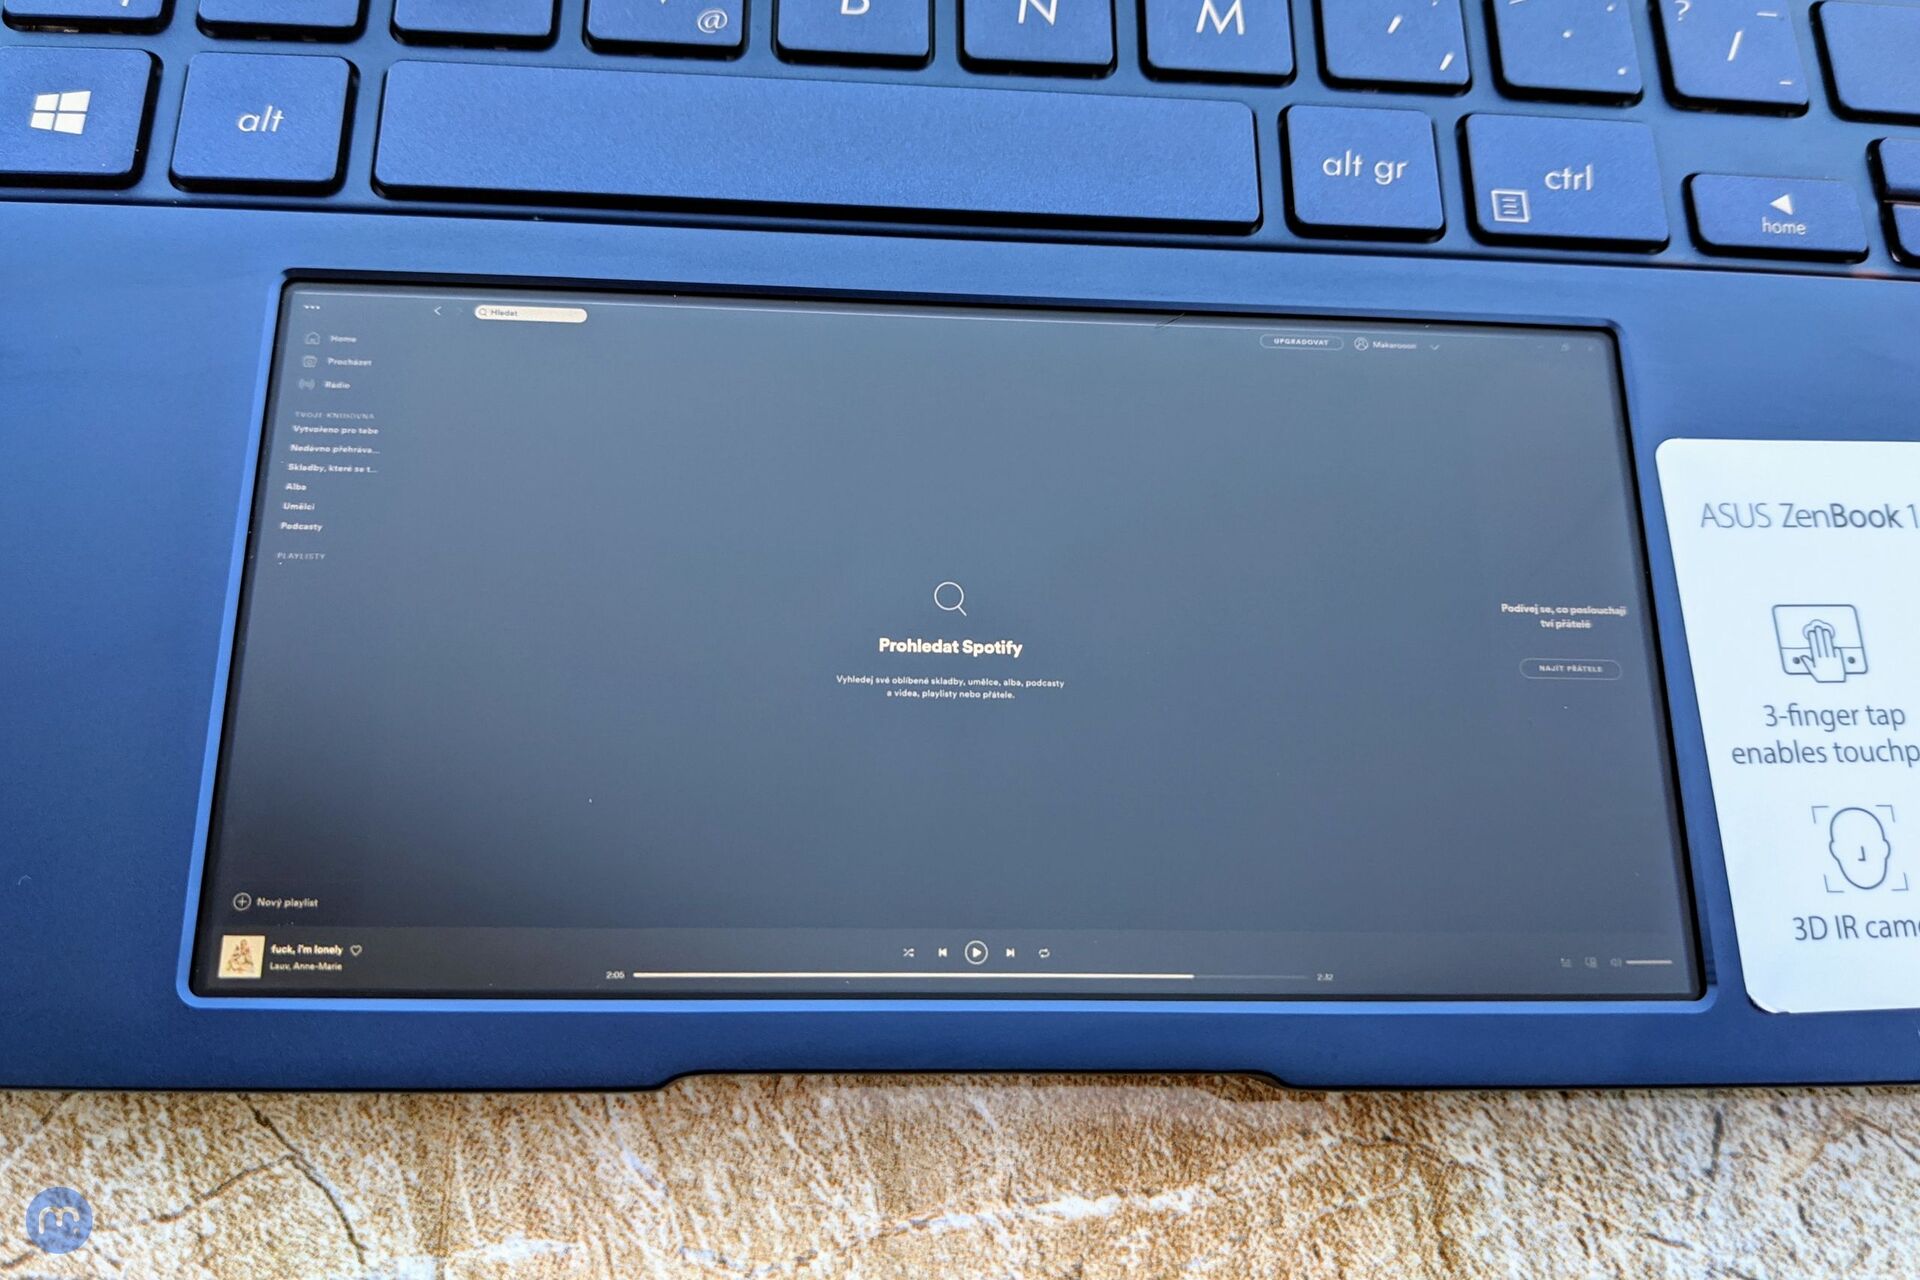 ASUS ZenBook 14 UX434FL